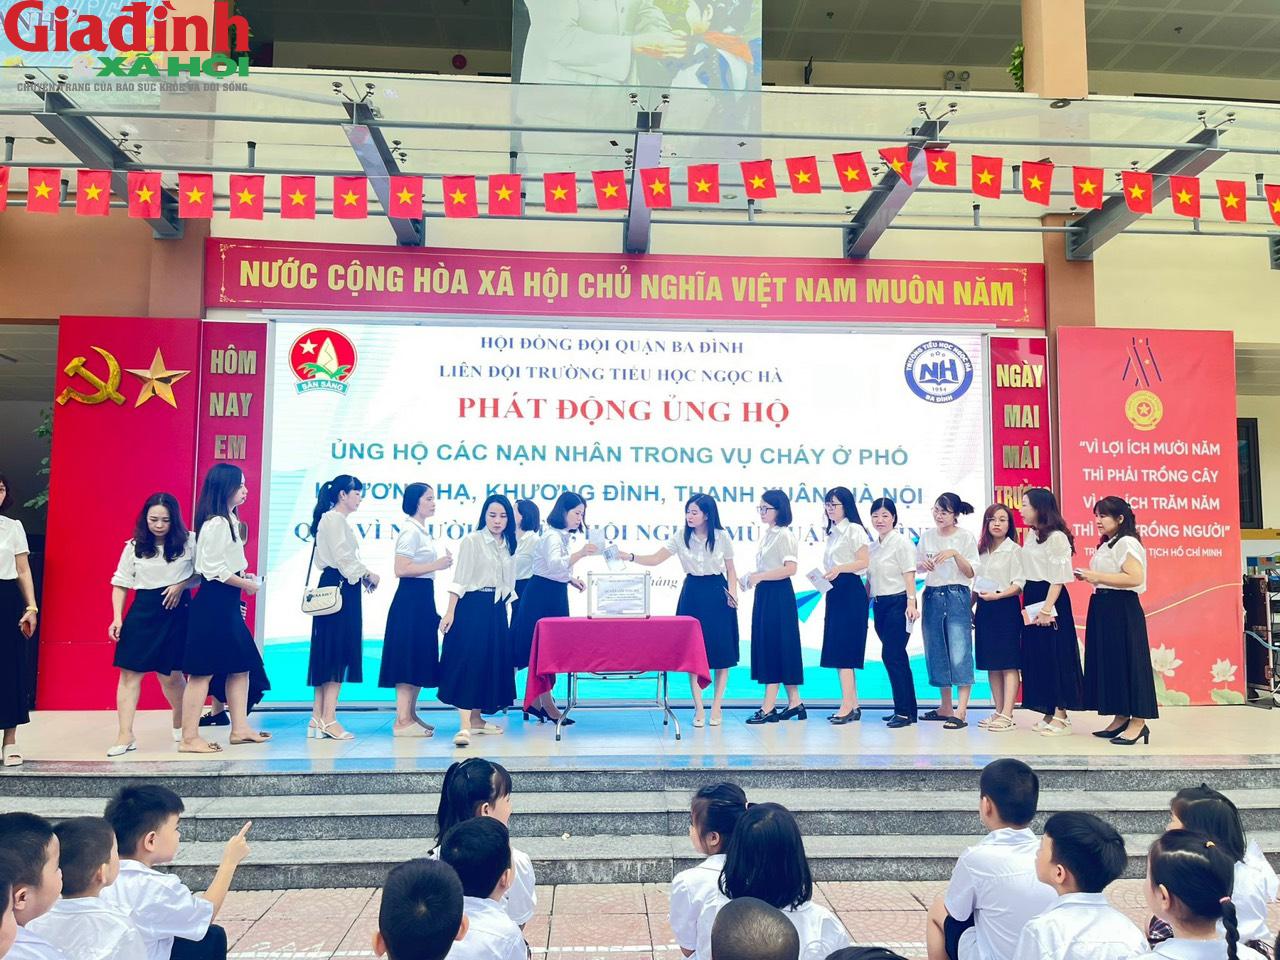 Hàng vạn học sinh, giáo viên quận Ba Đình quên góp ủng hộ các gia đình nạn nhân trong vụ cháy - Ảnh 16.